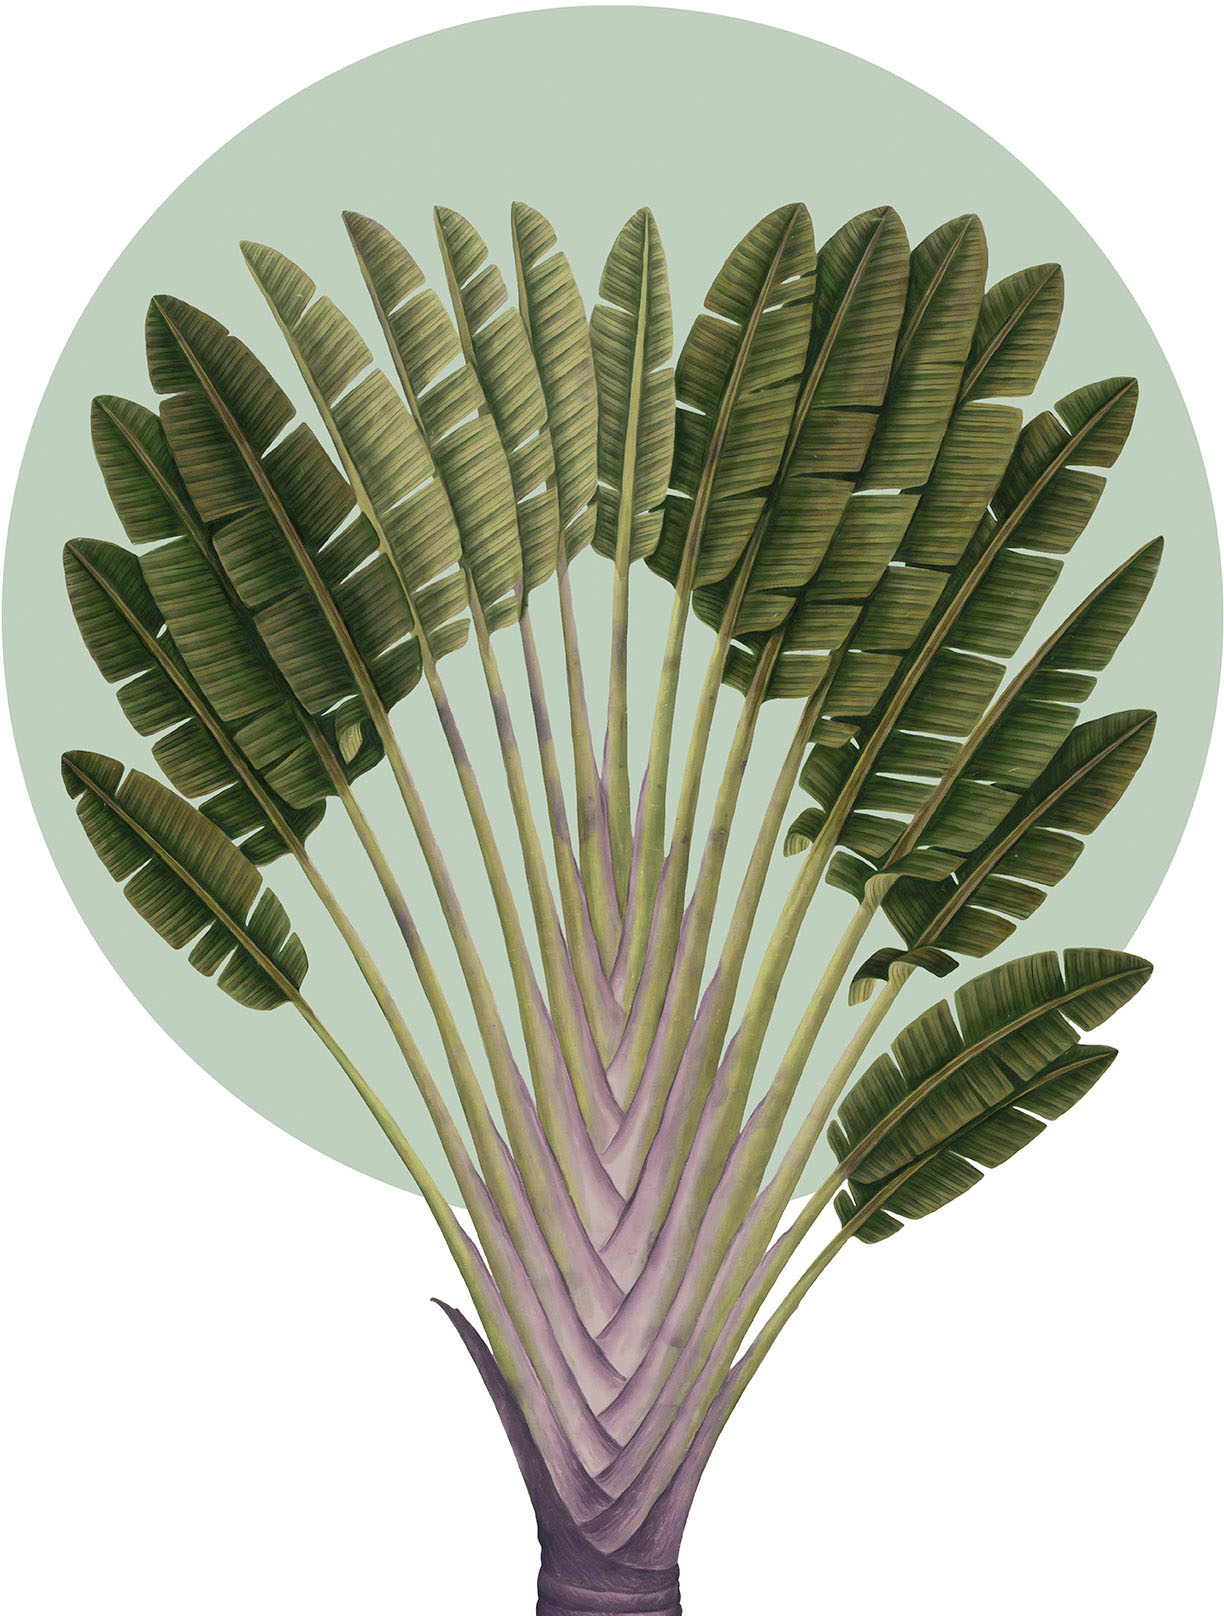 Komar Wandbild »Botanical Garden Pinnate Palm«, (1 St.), Deutsches Premium-Poster Fotopapier mit seidenmatter Oberfläche und hoher Lichtbeständigkeit. Für fotorealistische Drucke mit gestochen scharfen Details und hervorragender Farbbrillanz. von Komar